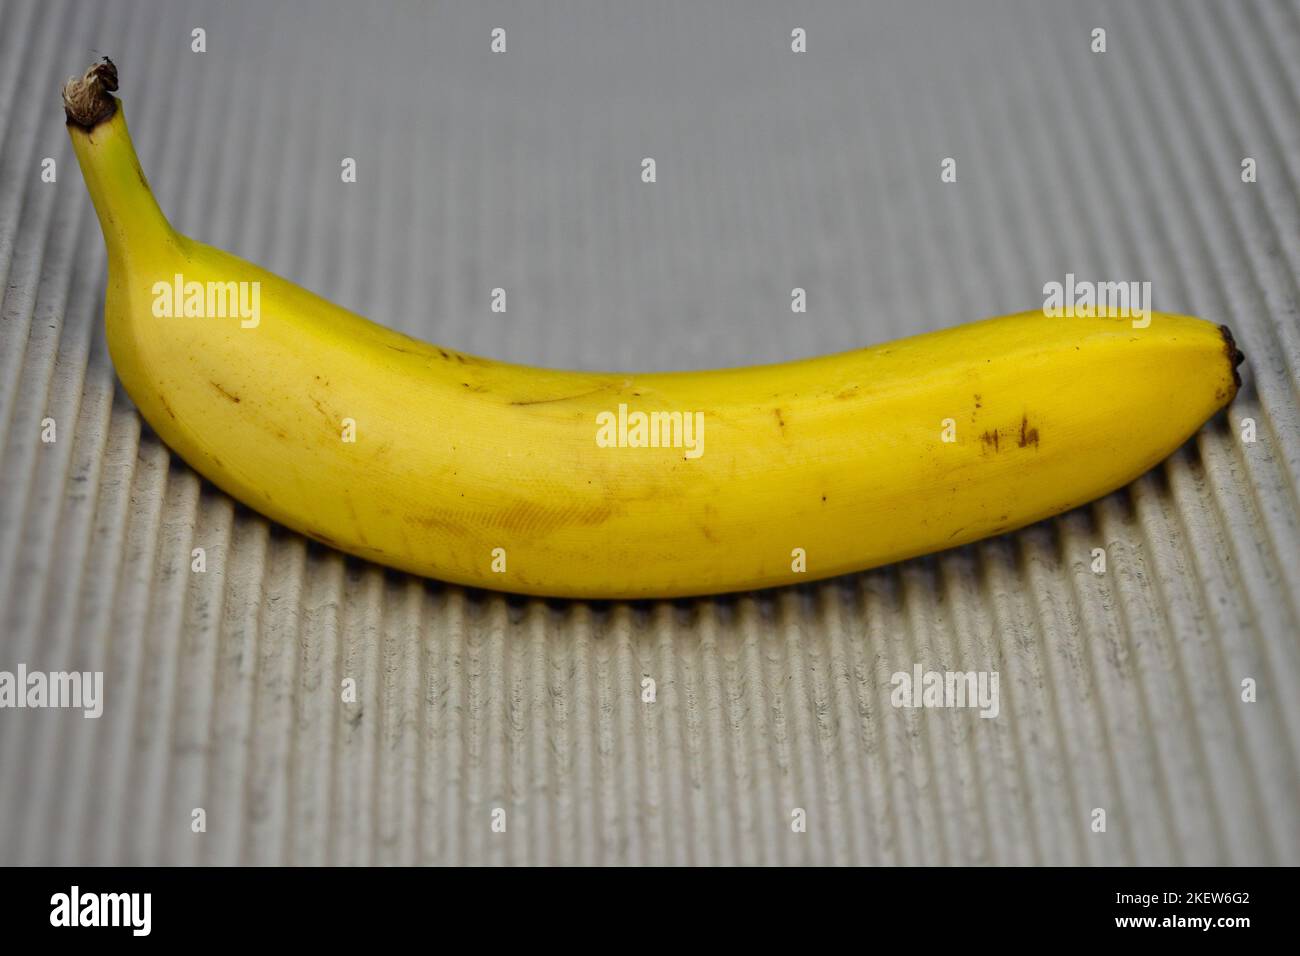 Wavy lines and banana. Stock Photo